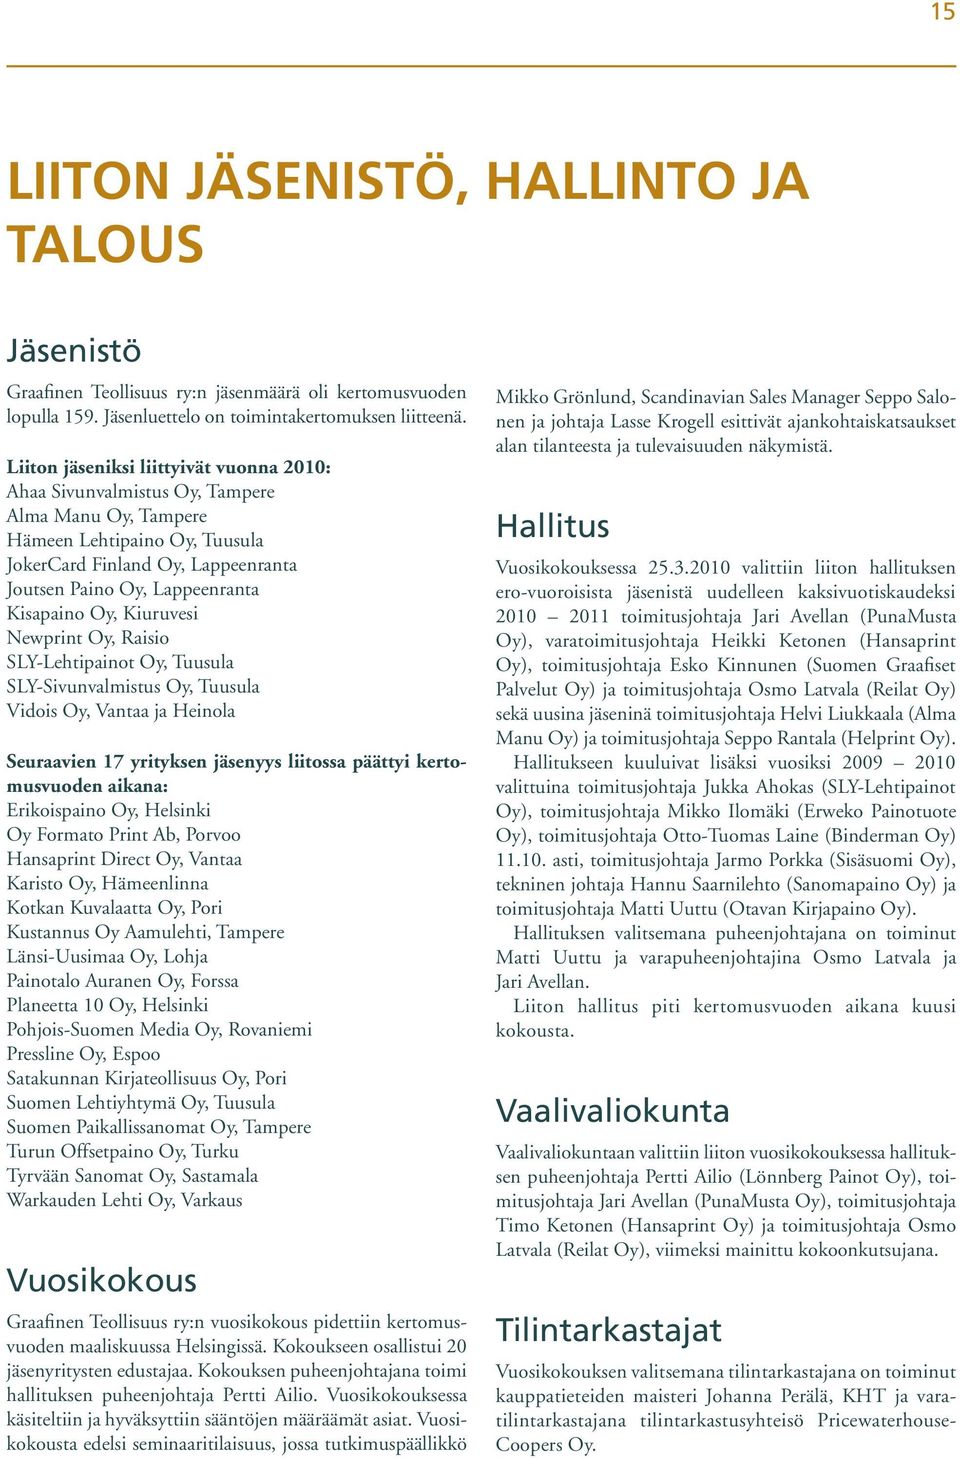 Oy, Kiuruvesi Newprint Oy, Raisio SLY-Lehtipainot Oy, Tuusula SLY-Sivunvalmistus Oy, Tuusula Vidois Oy, Vantaa ja Heinola Seuraavien 17 yrityksen jäsenyys liitossa päättyi kertomusvuoden aikana: